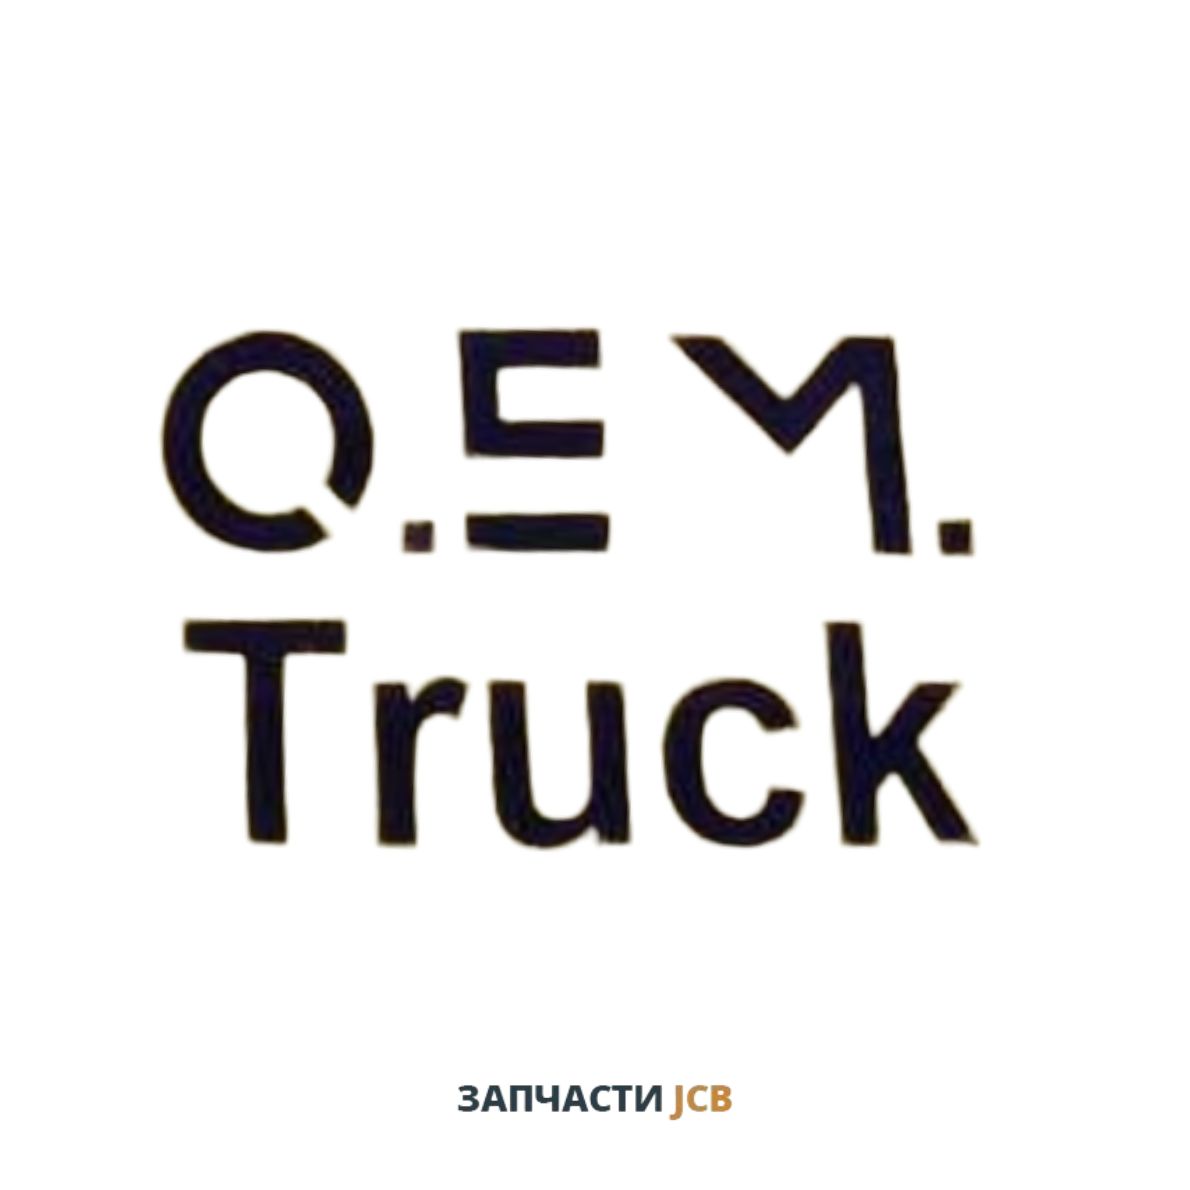 Гидравлическое масло OEM Truck HITACHI HYDRALIC OIL Free Zinc 205L